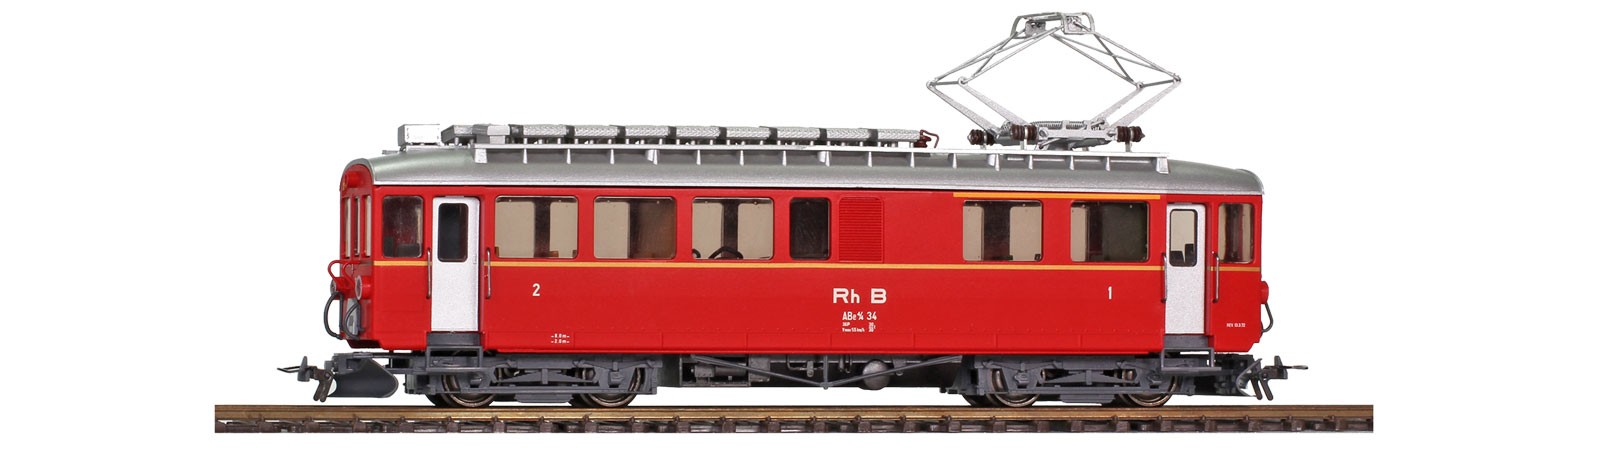 RhB ABe4/4 I 34 rot DCC digit mit SOUND, Bahn-Triebwagen, Ep.3-4